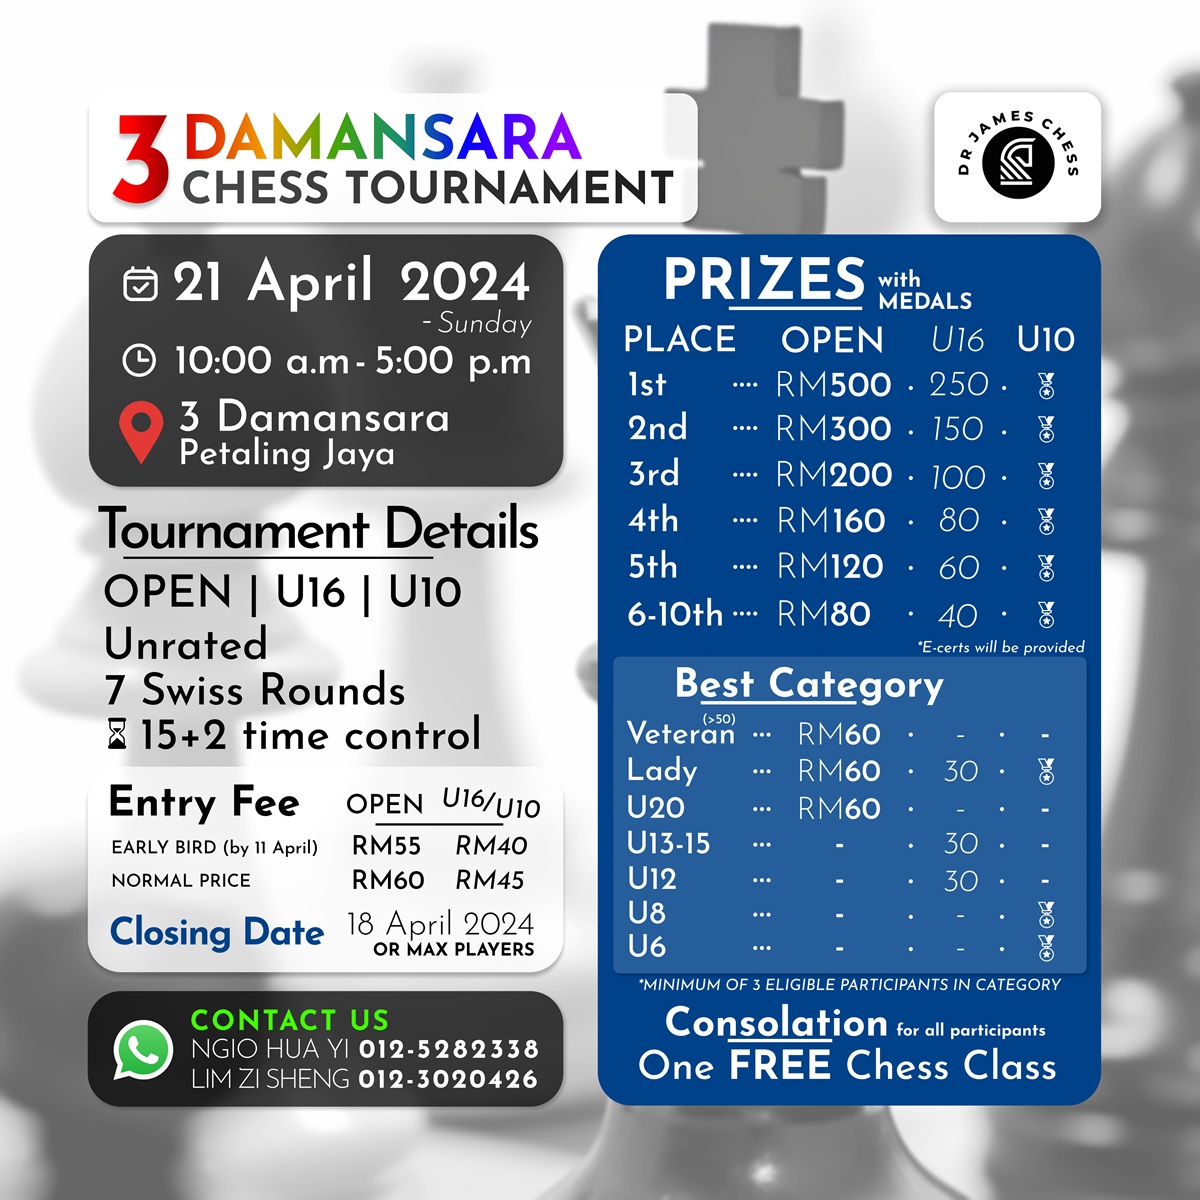 3 Damansara Chess Tournament